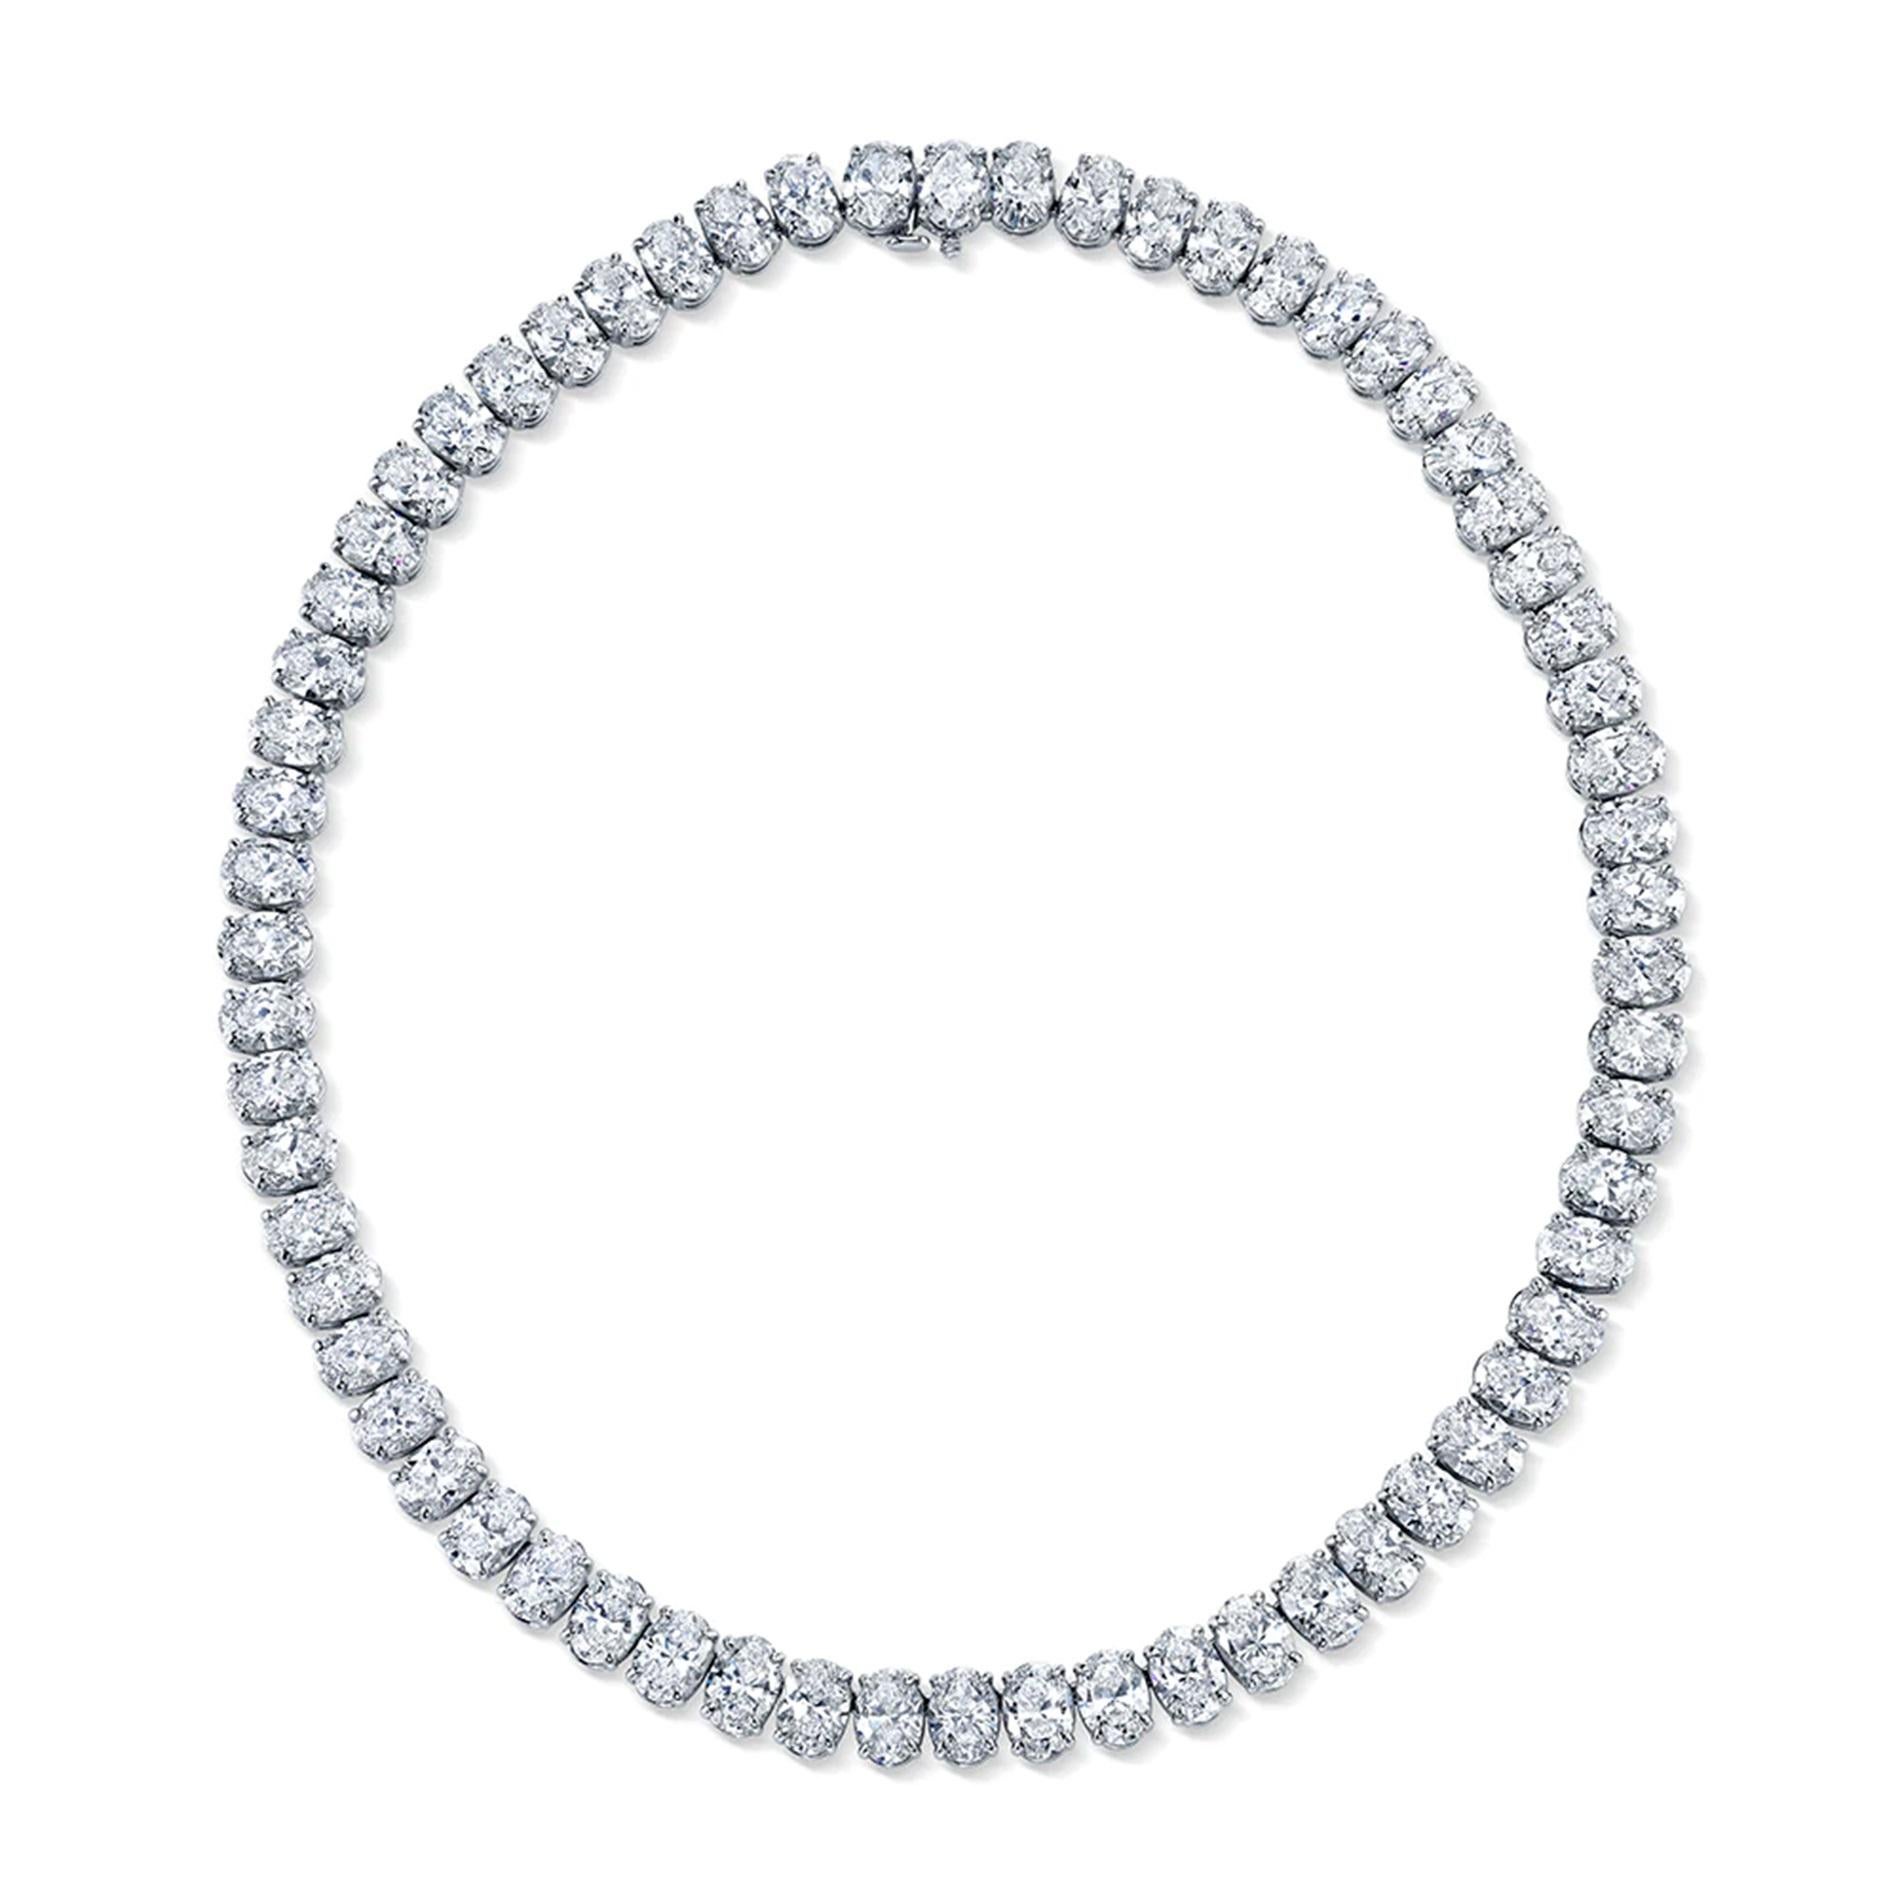 Eine exquisite Tennis-Halskette aus 65 Karat ovalen Diamanten, gefasst in massivem 18 Karat Weißgold
f Farbe
vs1/vs2 Klarheit